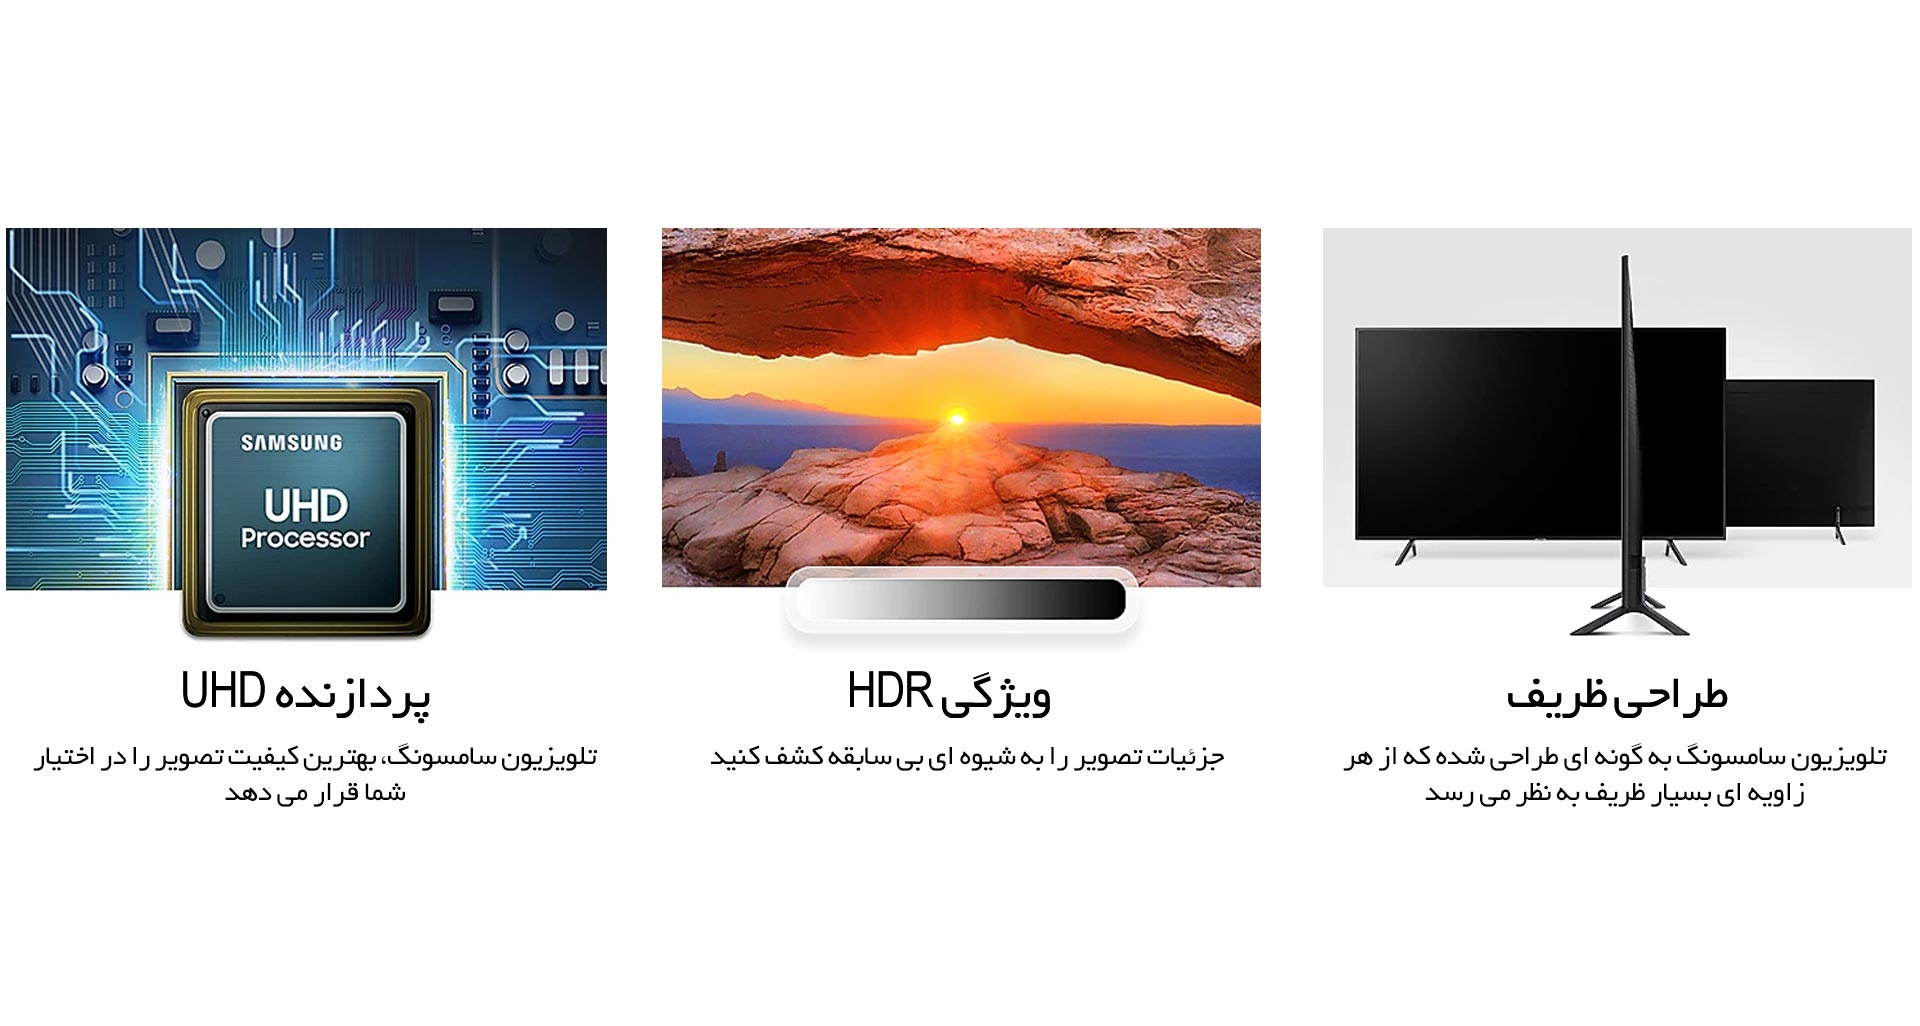 Samsung LED 43RU7100 HDR Smart 4K TV